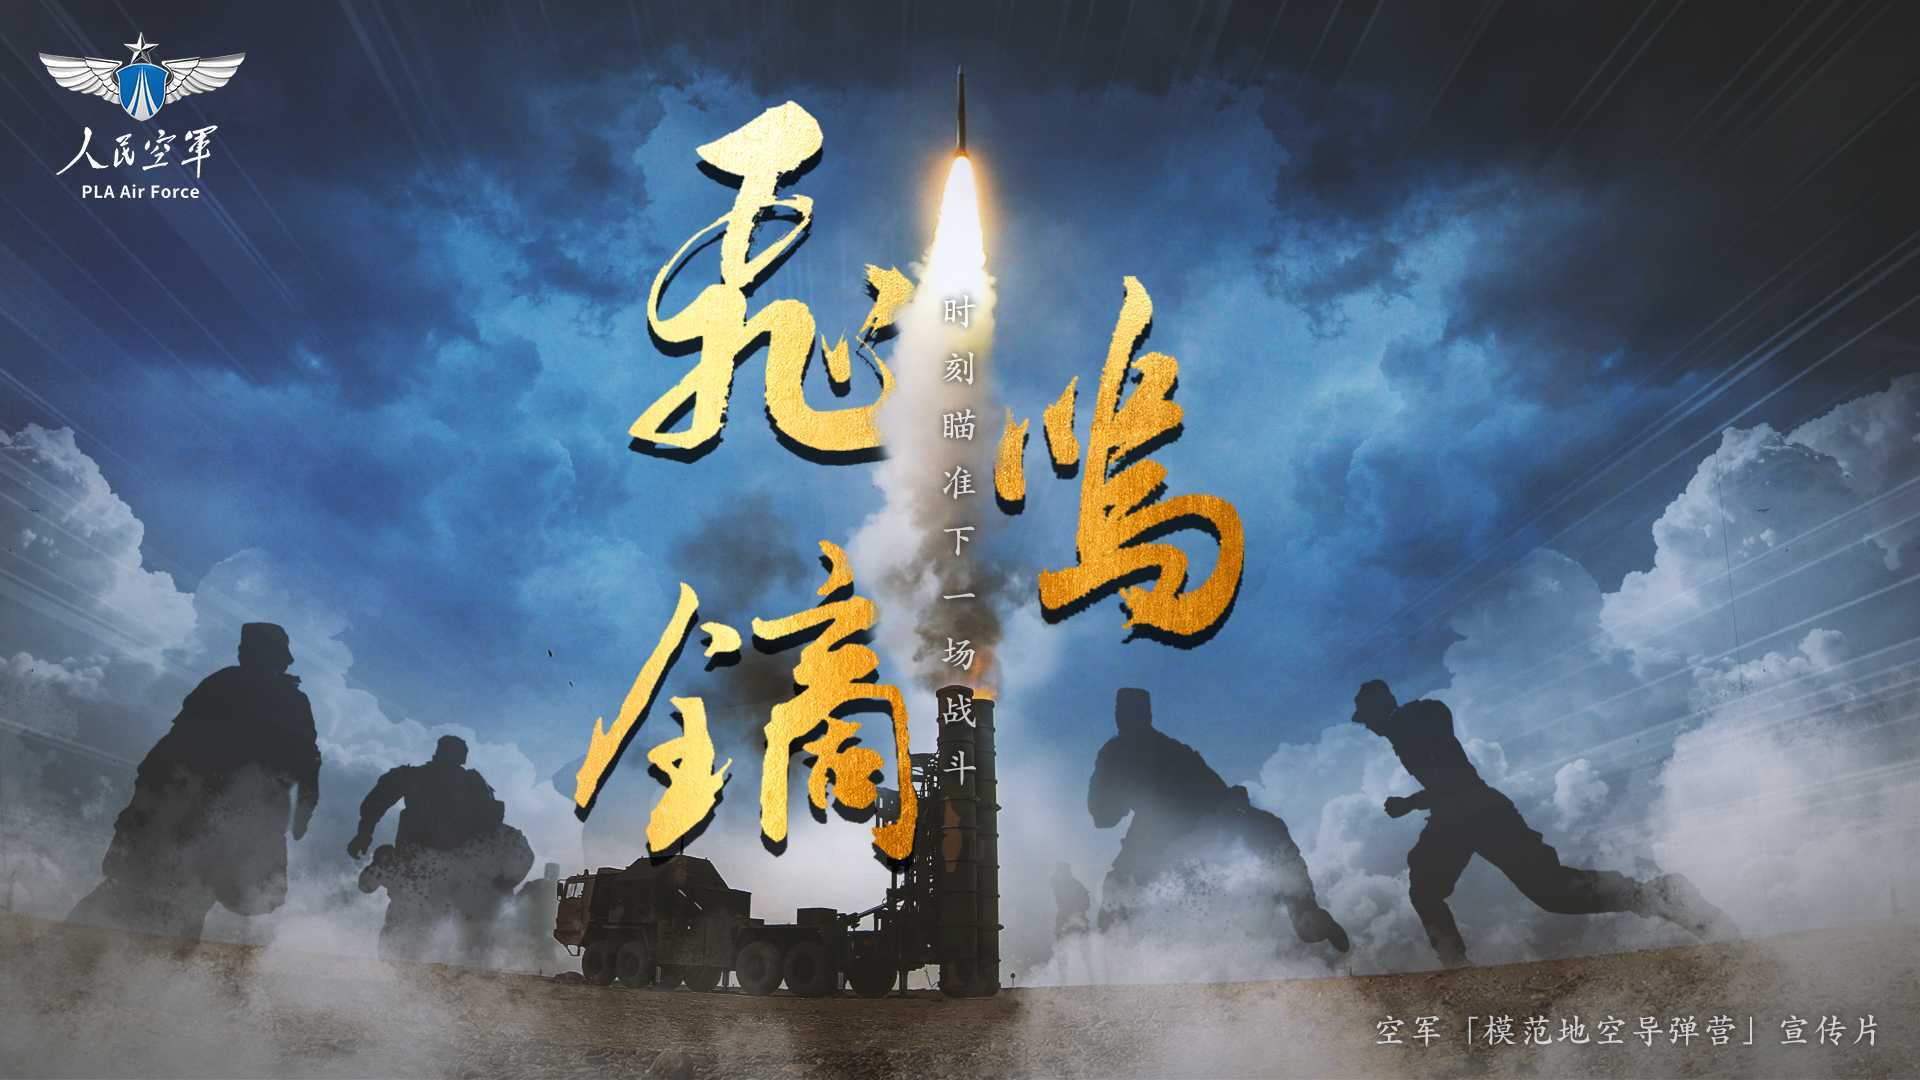 中国空军地空导弹兵宣传片《飞鸣镝》